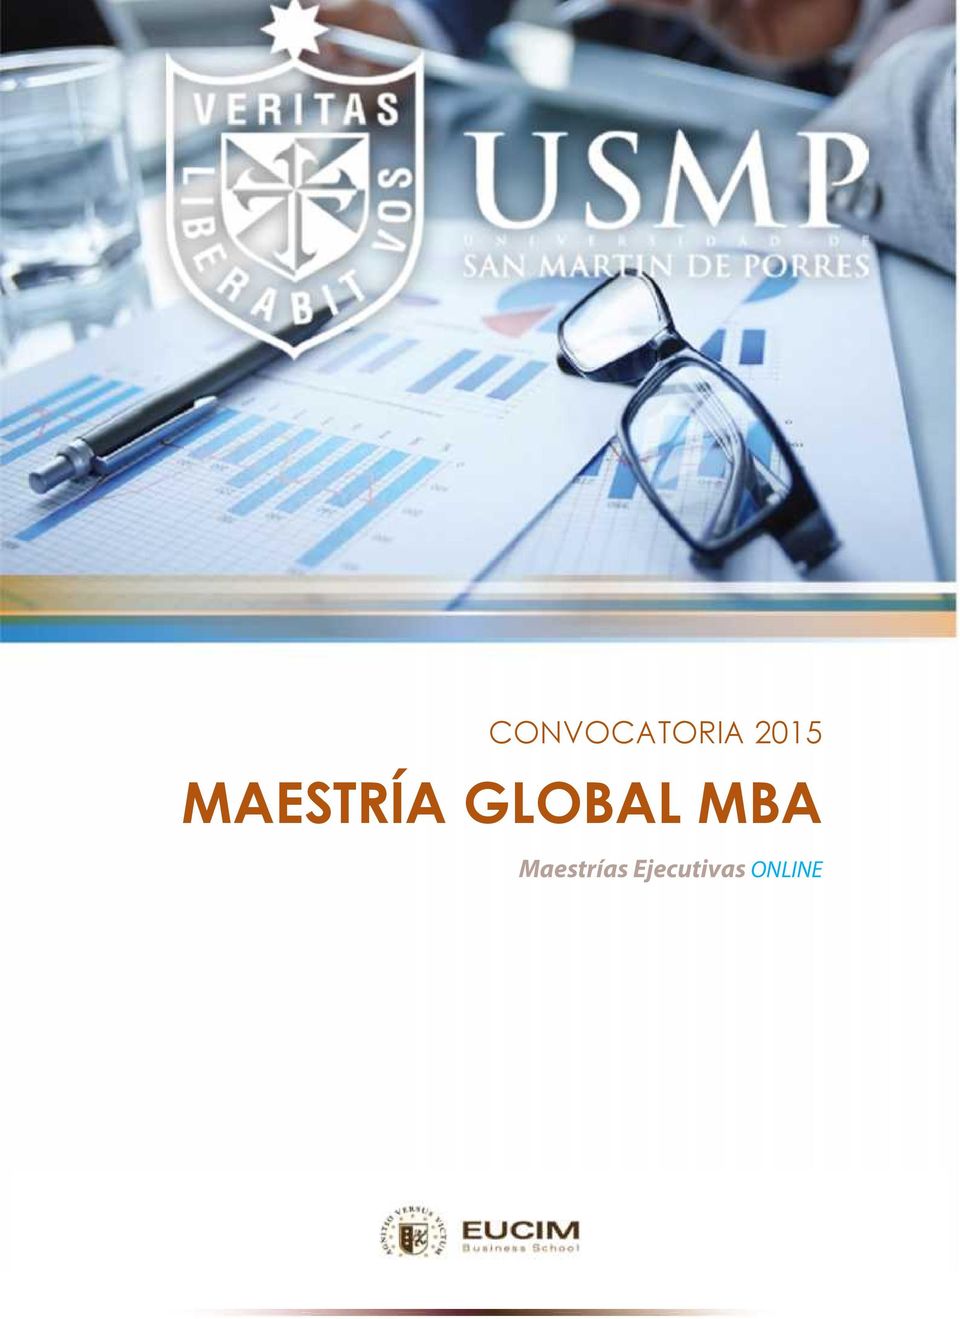 GLOBAL MBA